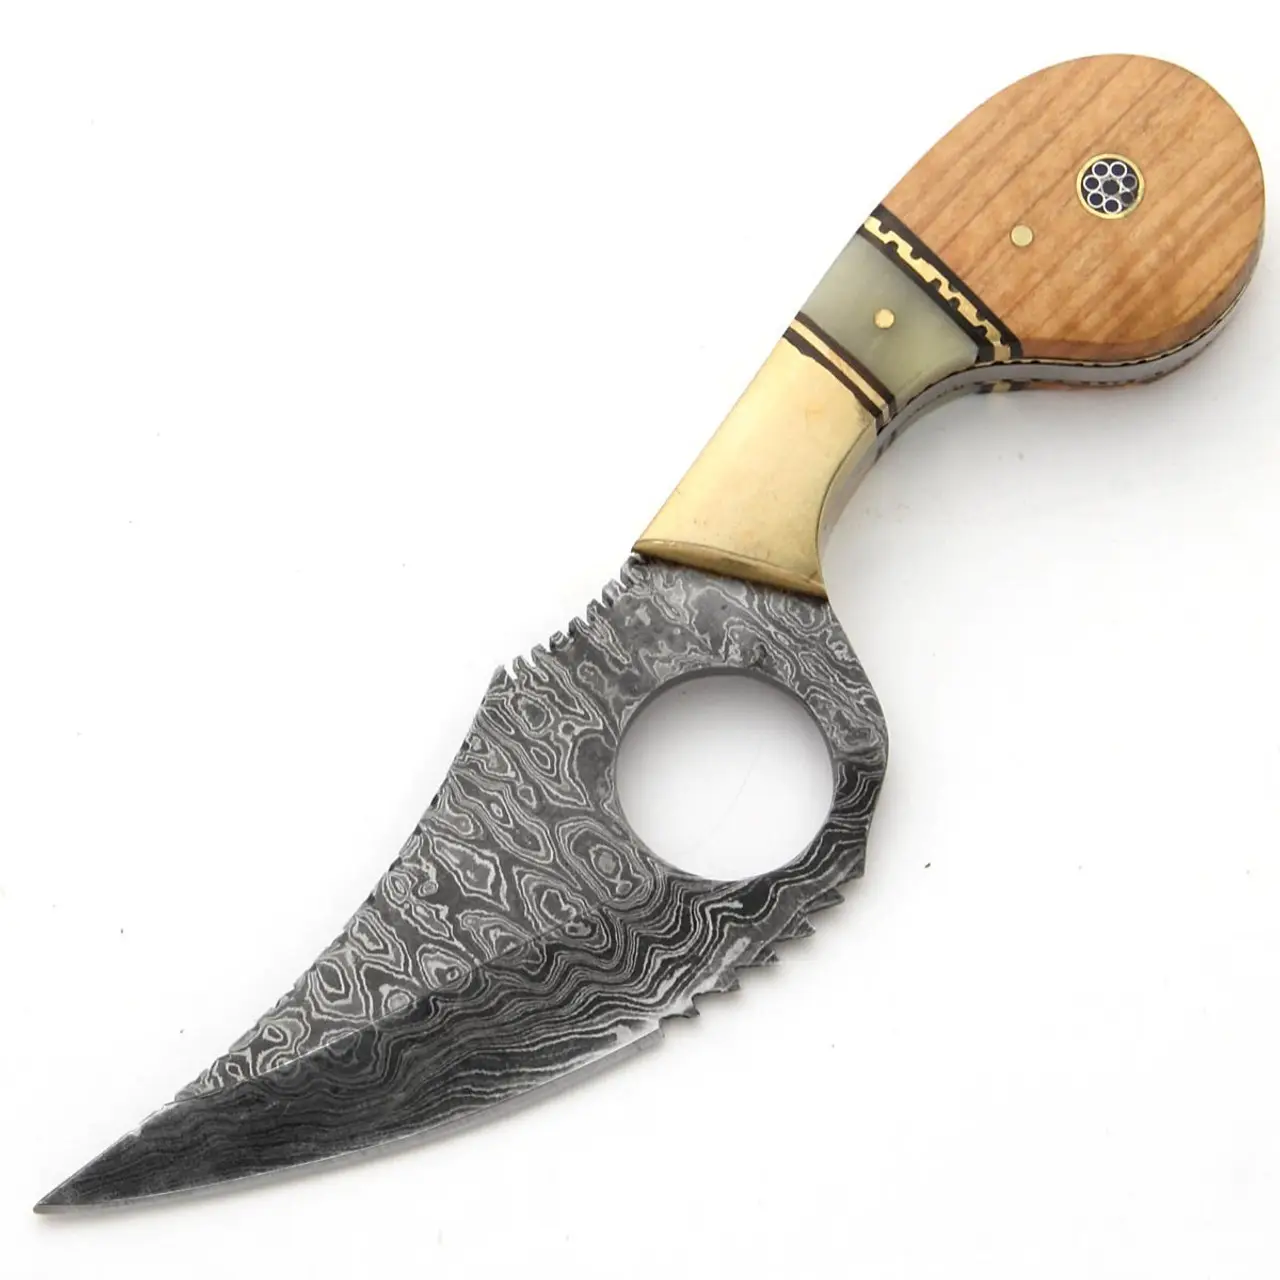 Damascus biểu tượng tùy chỉnh và kích cỡ Hunter cắm trại ngoài trời Skinner cố định lưỡi dao với tay cầm bằng gỗ để bán